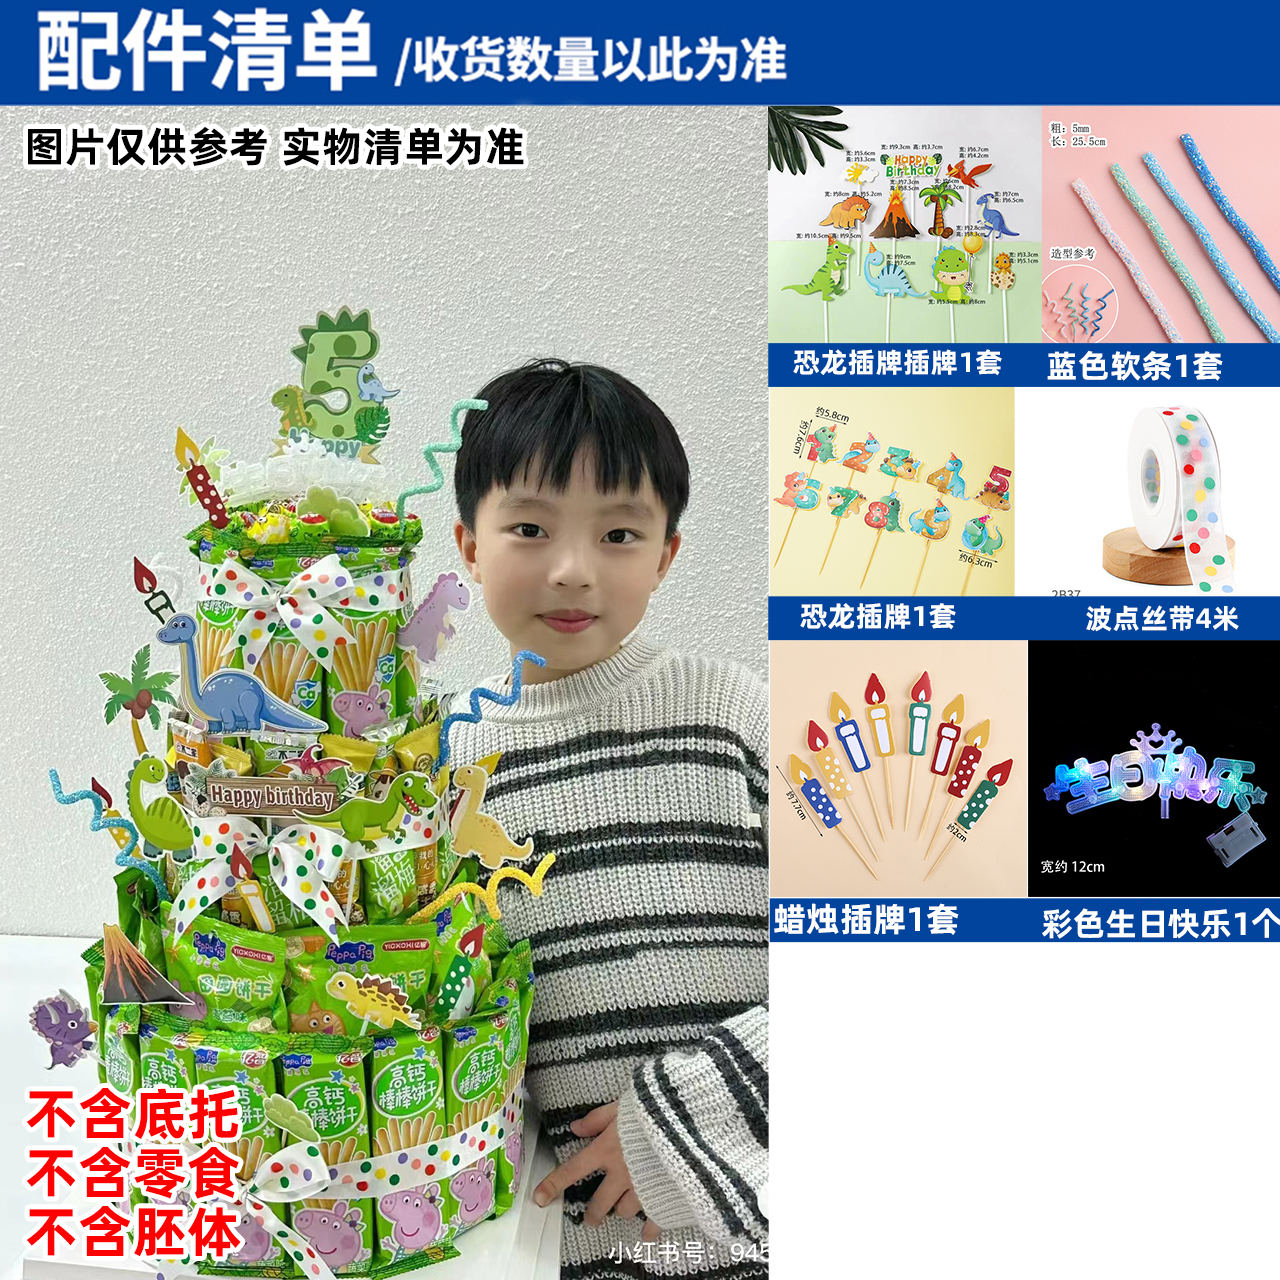 零食生日蛋糕装饰儿童创意插件泡沫胚模型diy材料派对小红书同款